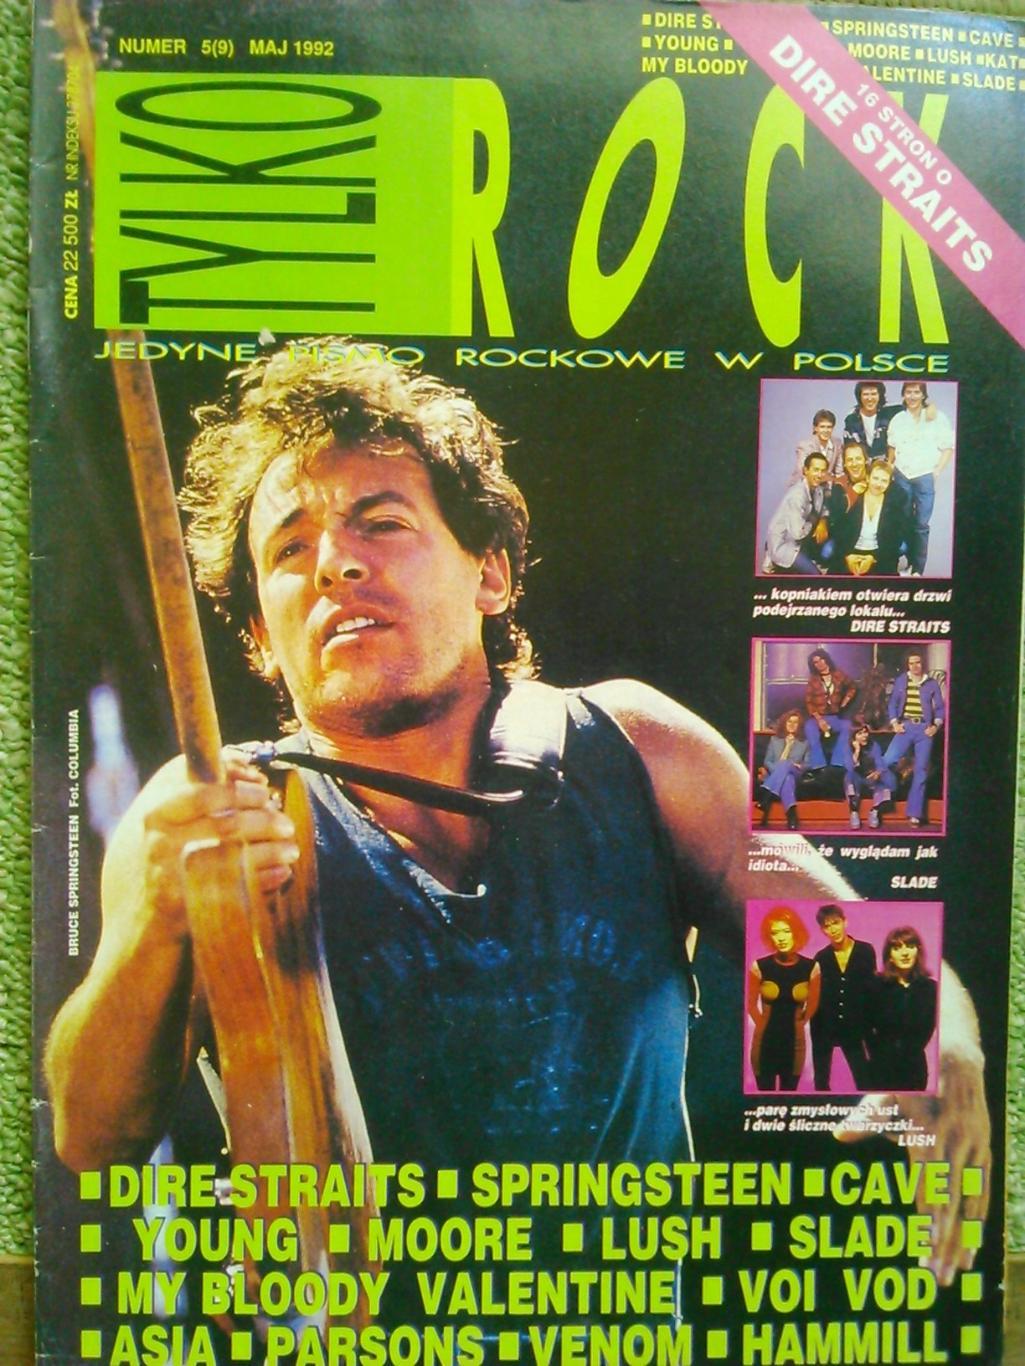 TYLKO ROCK (Только Рок) №4 (9) 1992. Польша. Bruce SPRINGSTEEN Оптом скидки 50%.